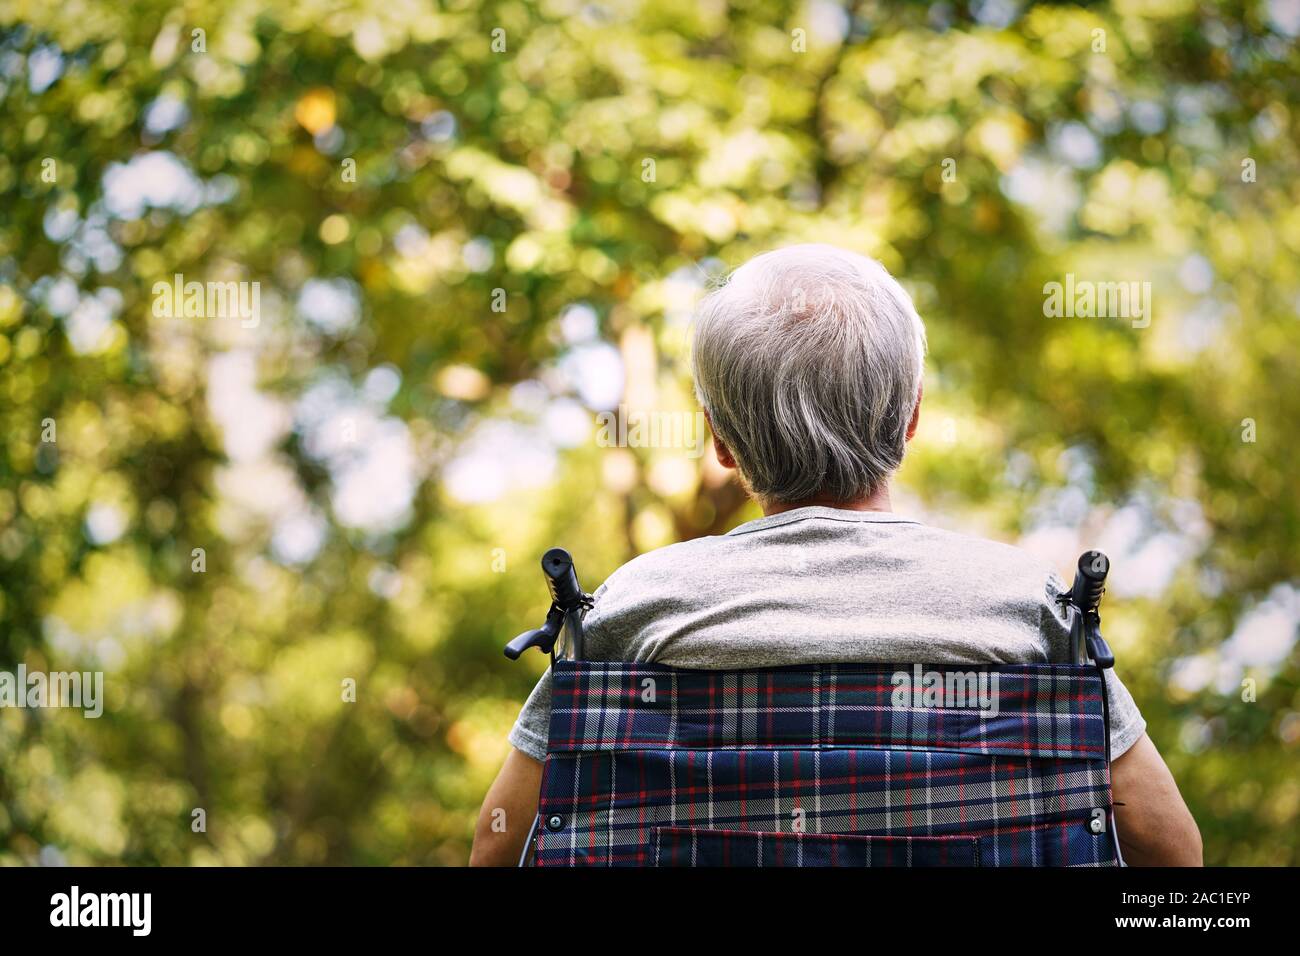 Vista trasera de un anciano hombre sentado en una silla de ruedas mirando hacia arriba Foto de stock